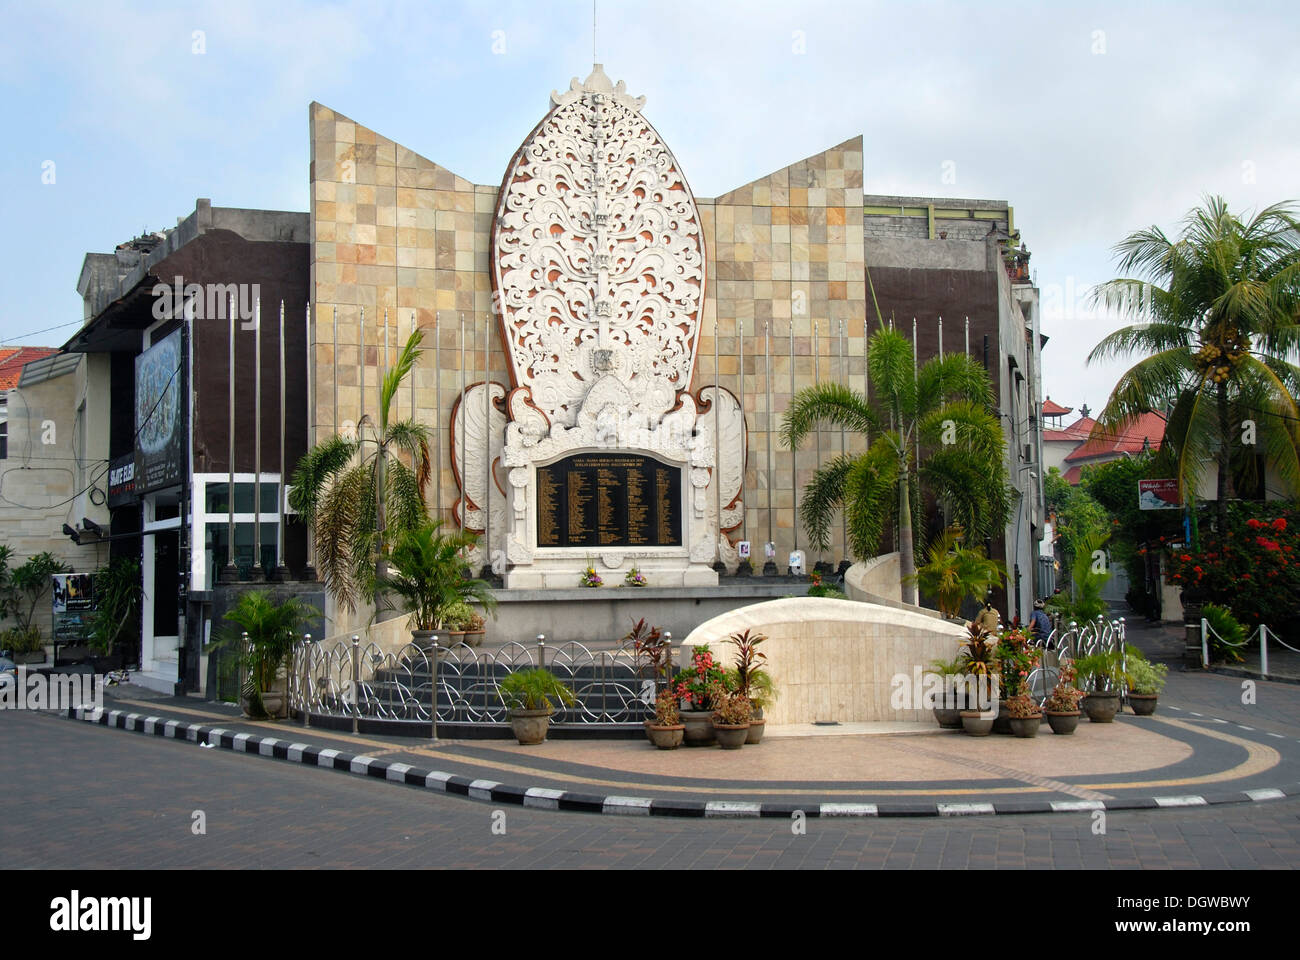 Bali Bomb Memorial for the victims of the terrorist attacks in 2002, Kuta, Bali, Indonesia, Southeast Asia, Asia Stock Photo